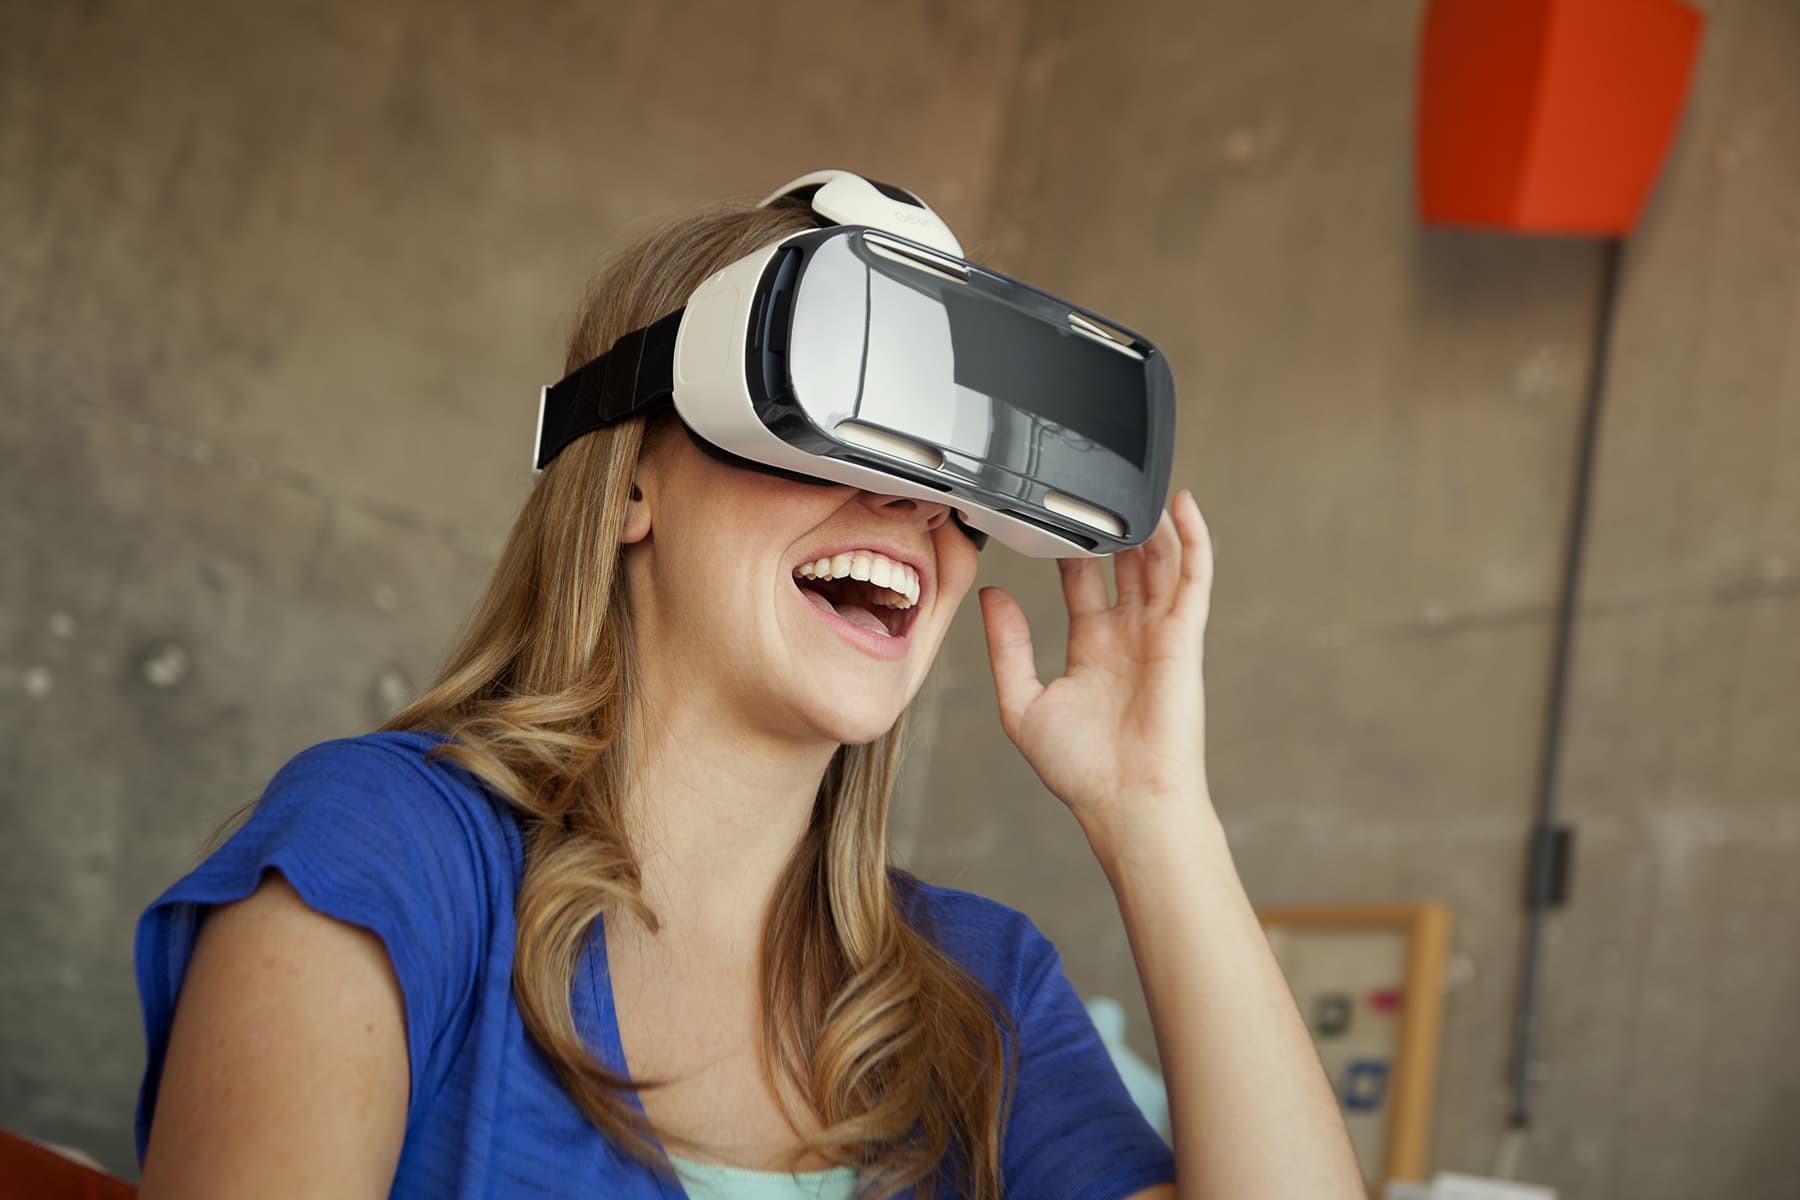 Картинка очки реальности. Шлем виртуальной реальности LG 360 VR. Очки дополненной реальности Samsung. Виар очки самсунг. Очкивир туальнайряльности.